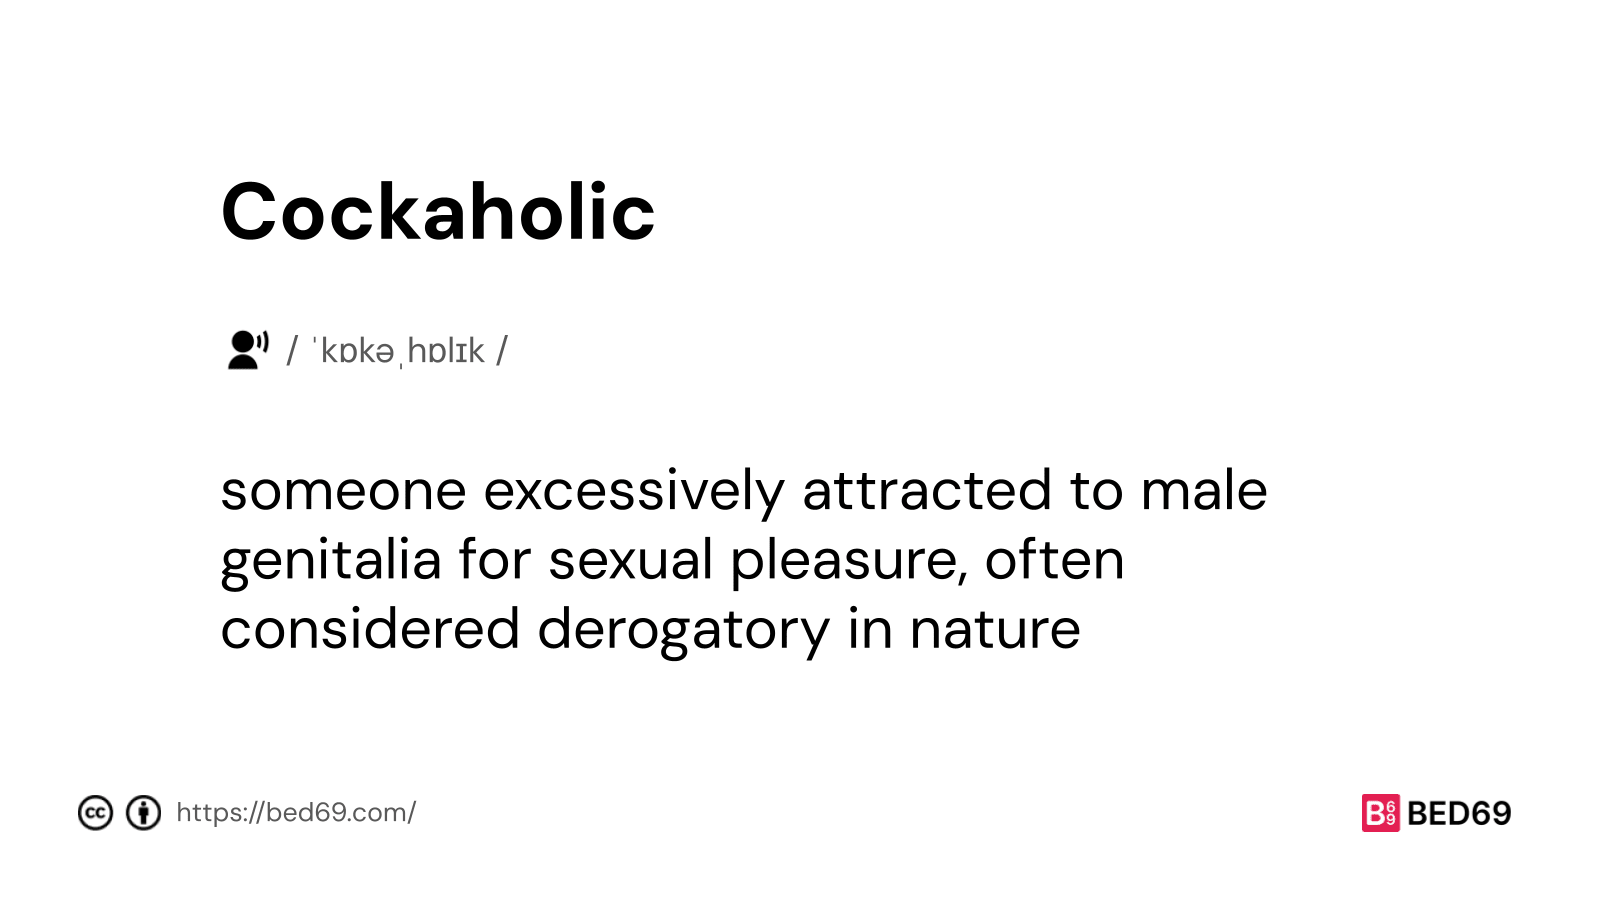 Cockaholic - Word Definition